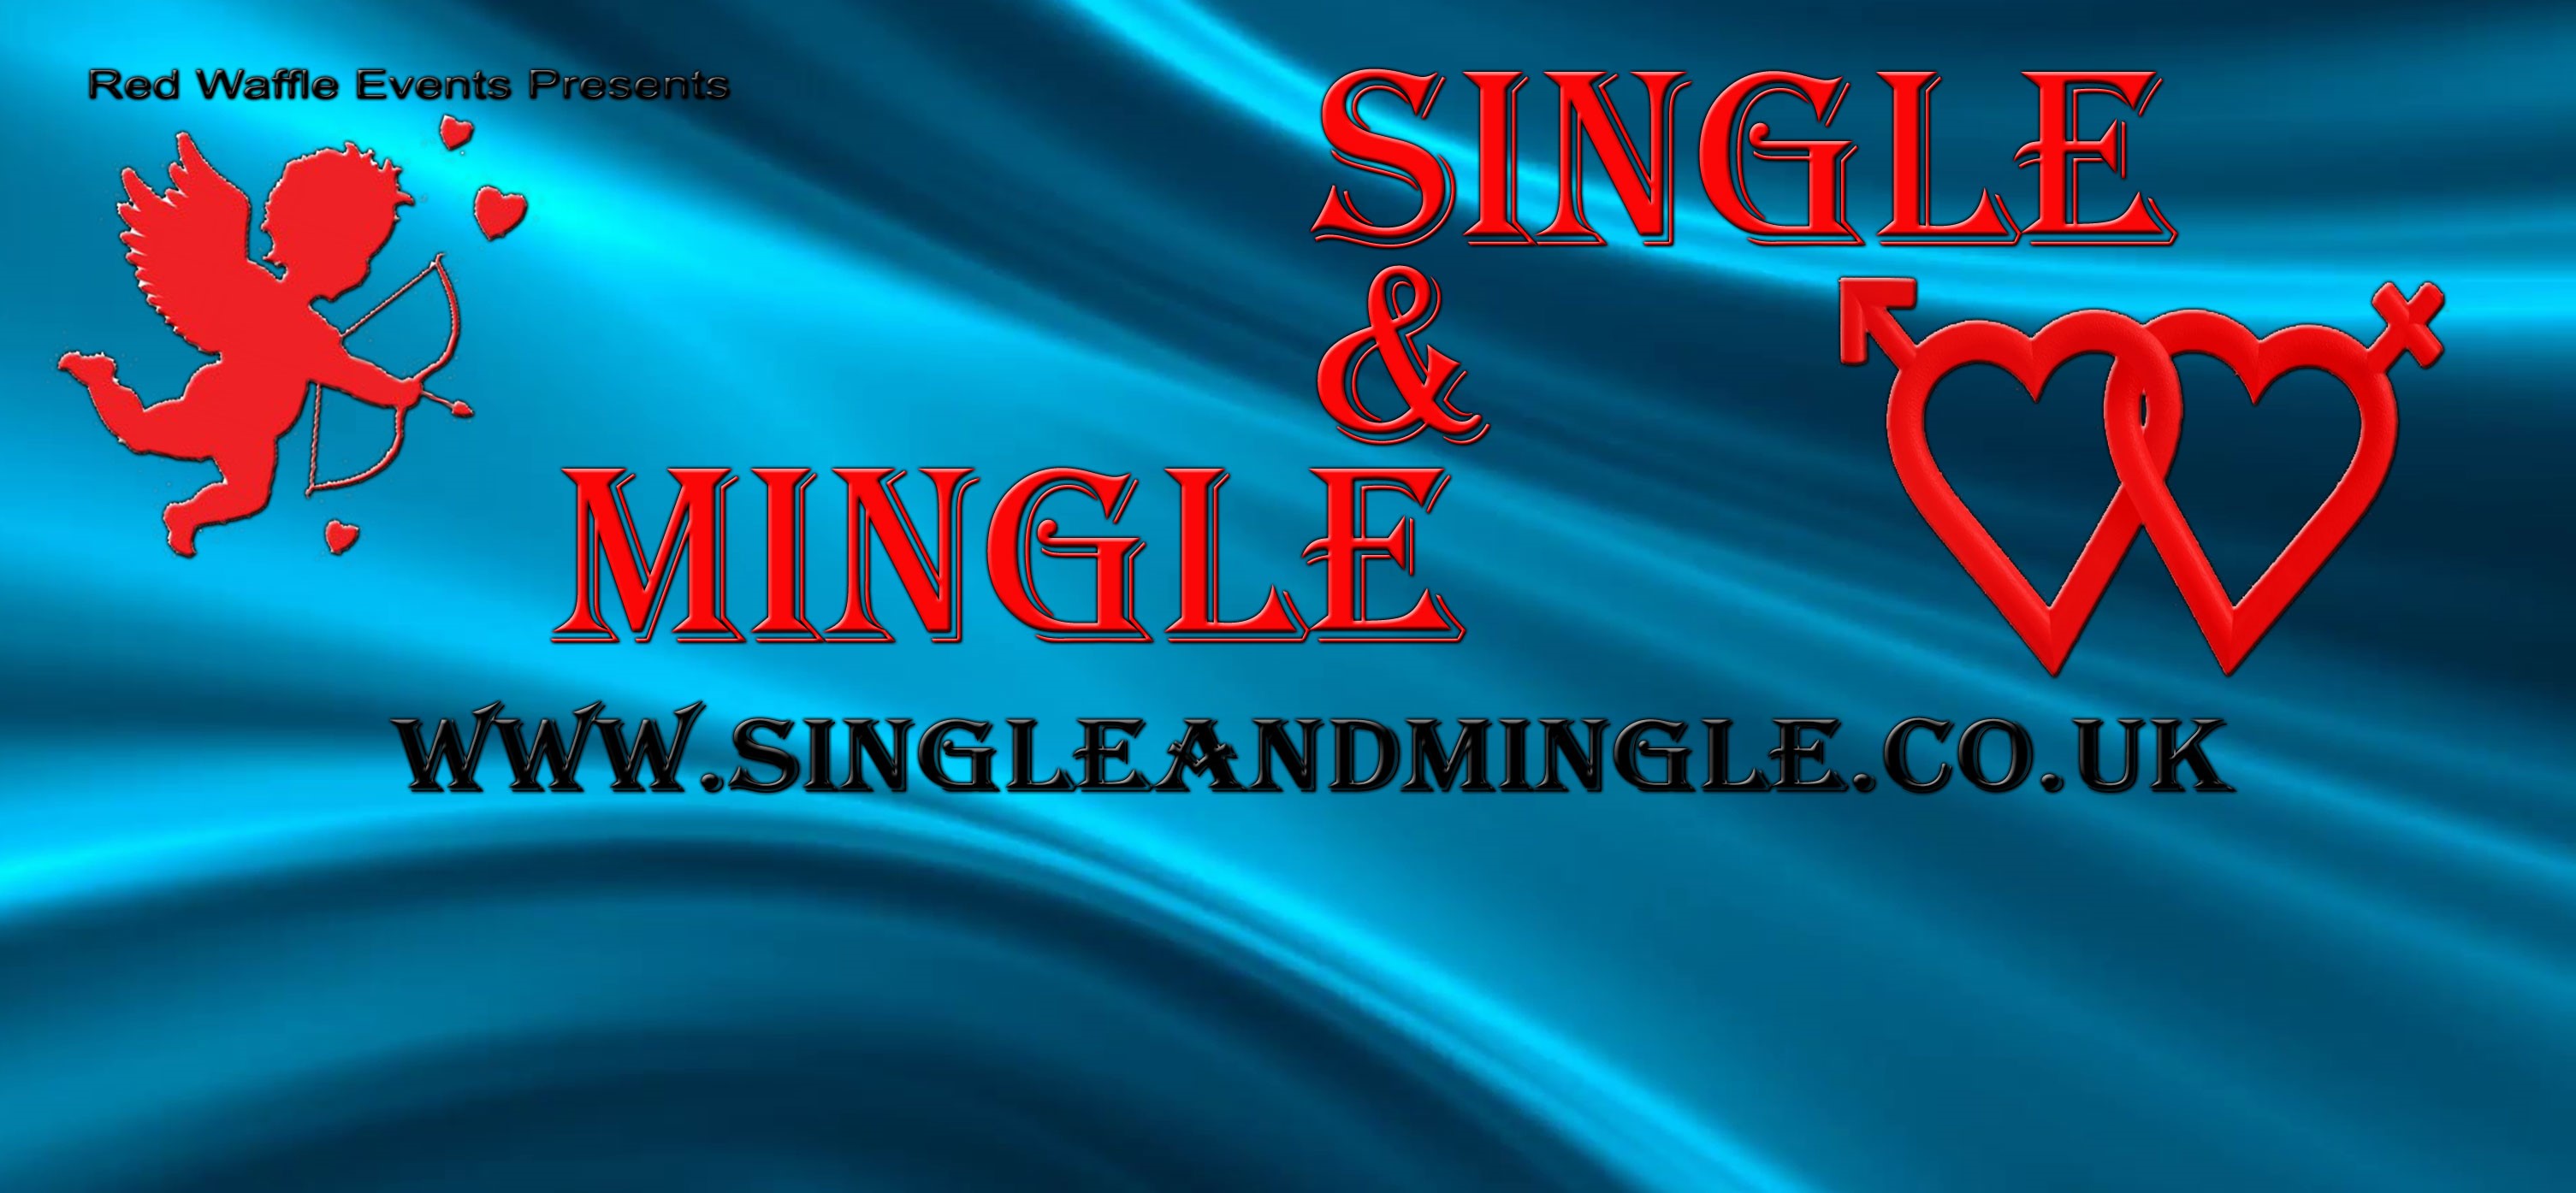 Single mingle oder lap